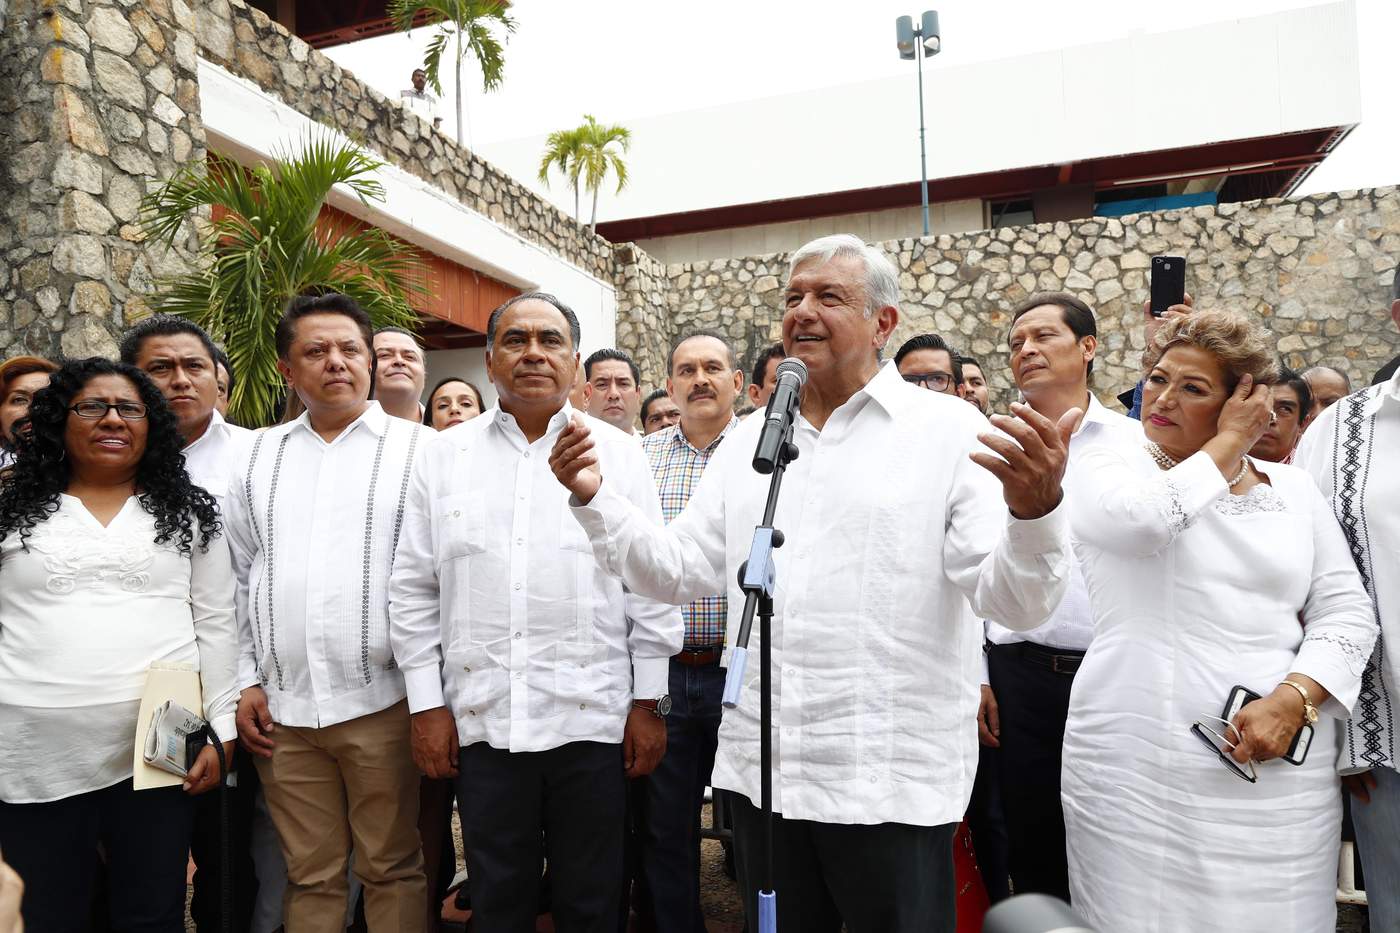 Tras los abucheos a gobernadores en sus giras de trabajo, el presidente Andrés Manuel López Obrador hizo un llamado a los dirigentes de Morena a que actúen de manera respetuosa, con responsabilidad y no alienten protestas contra autoridades de otros partidos. (EL UNIVERSAL)